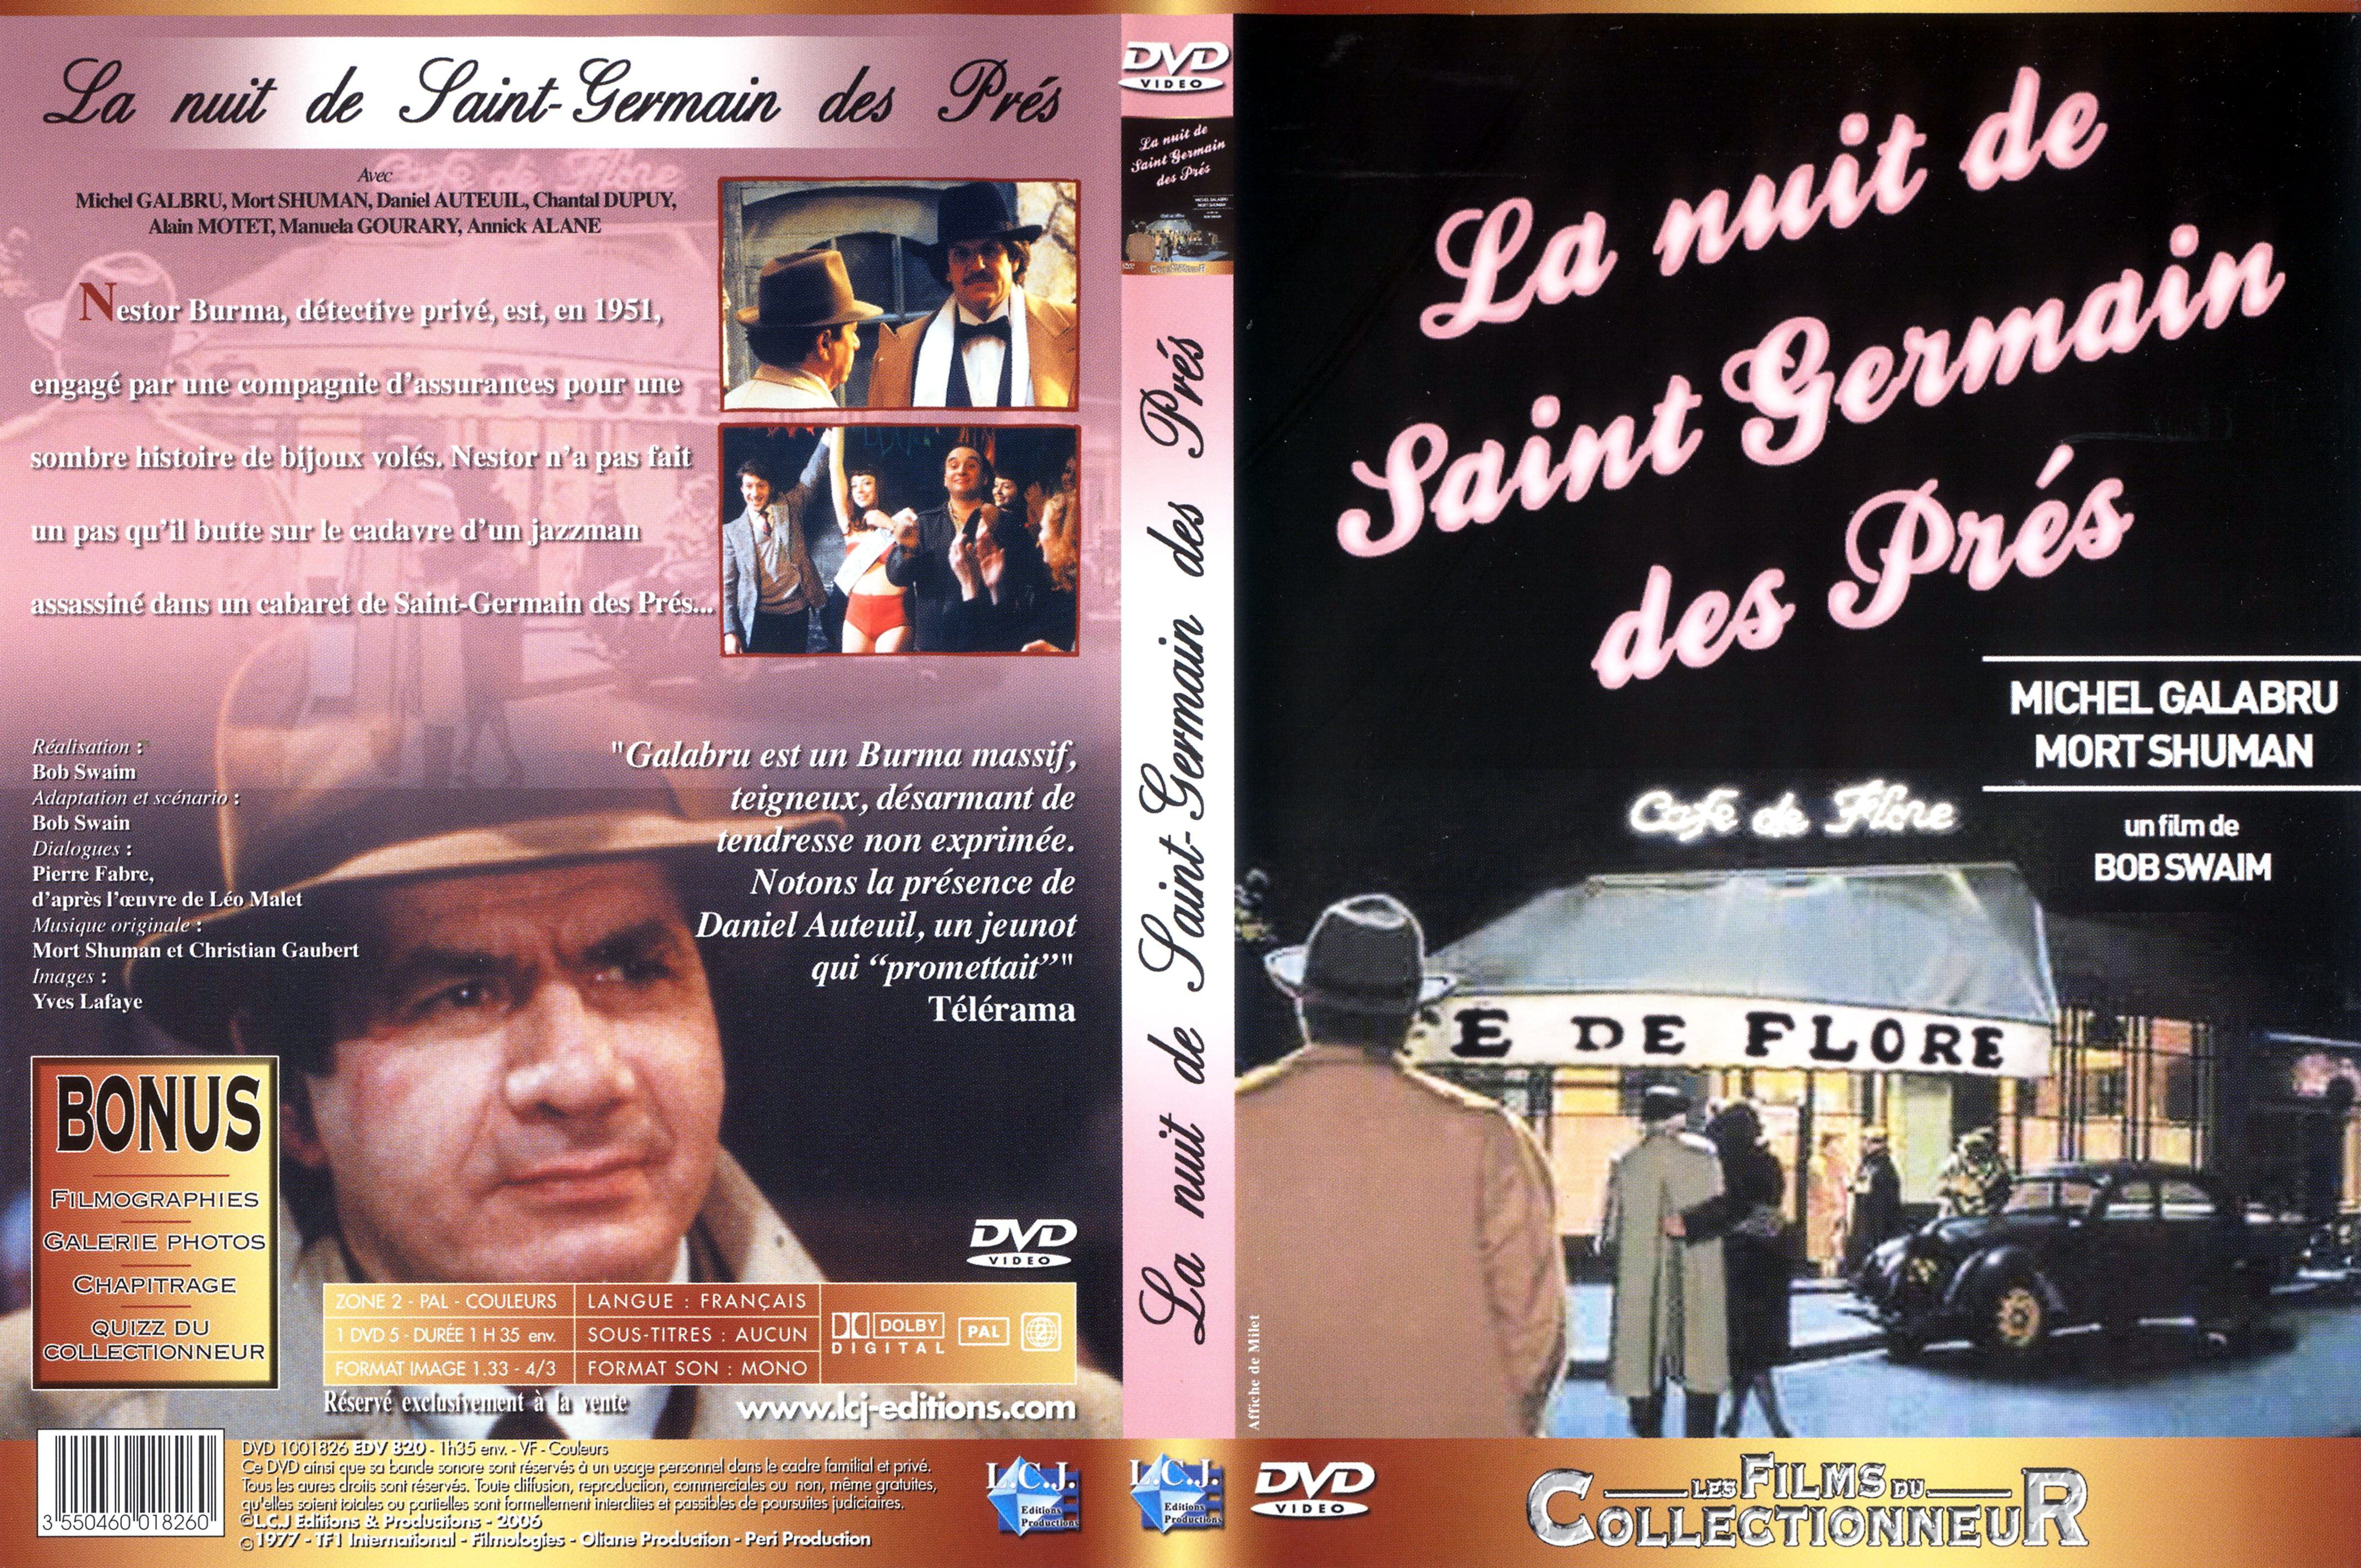 Jaquette DVD La nuit de Saint Germain des prs